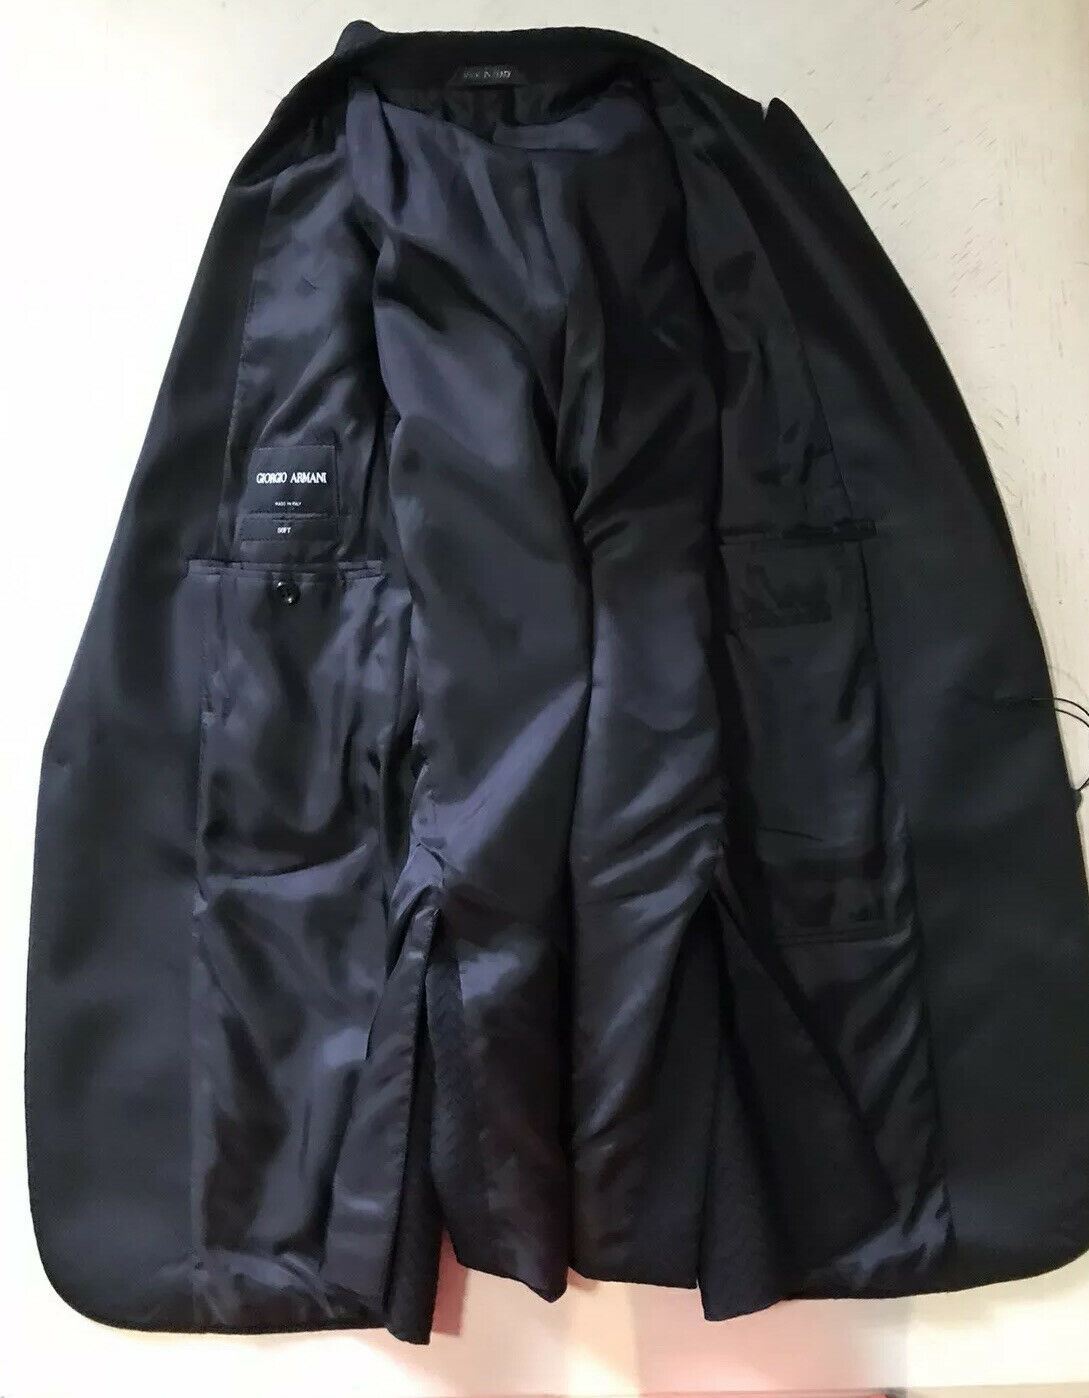 NWT $2595 Giorgio Armani Men Tuxedo Jacket Blazer Black 38R US/48R Eu Italy